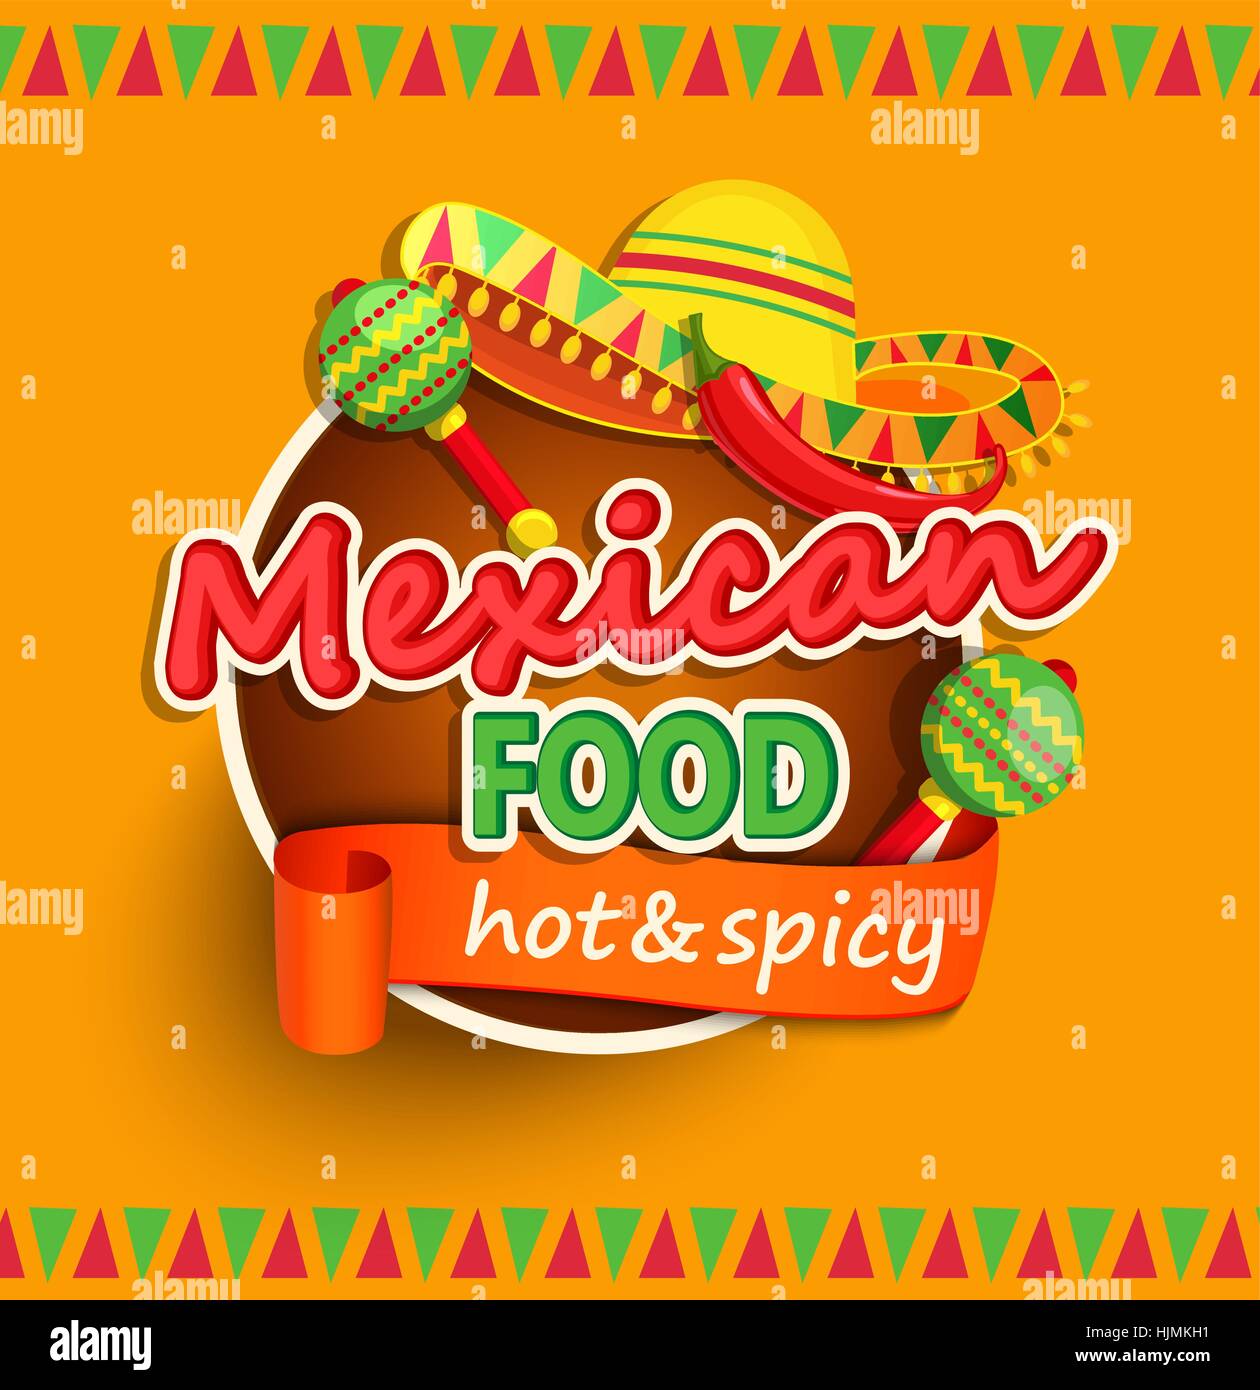 Mexikanisches Essen Label mit traditionellen würzig, Maracas und Sombrero Vektor-illustration Stock Vektor